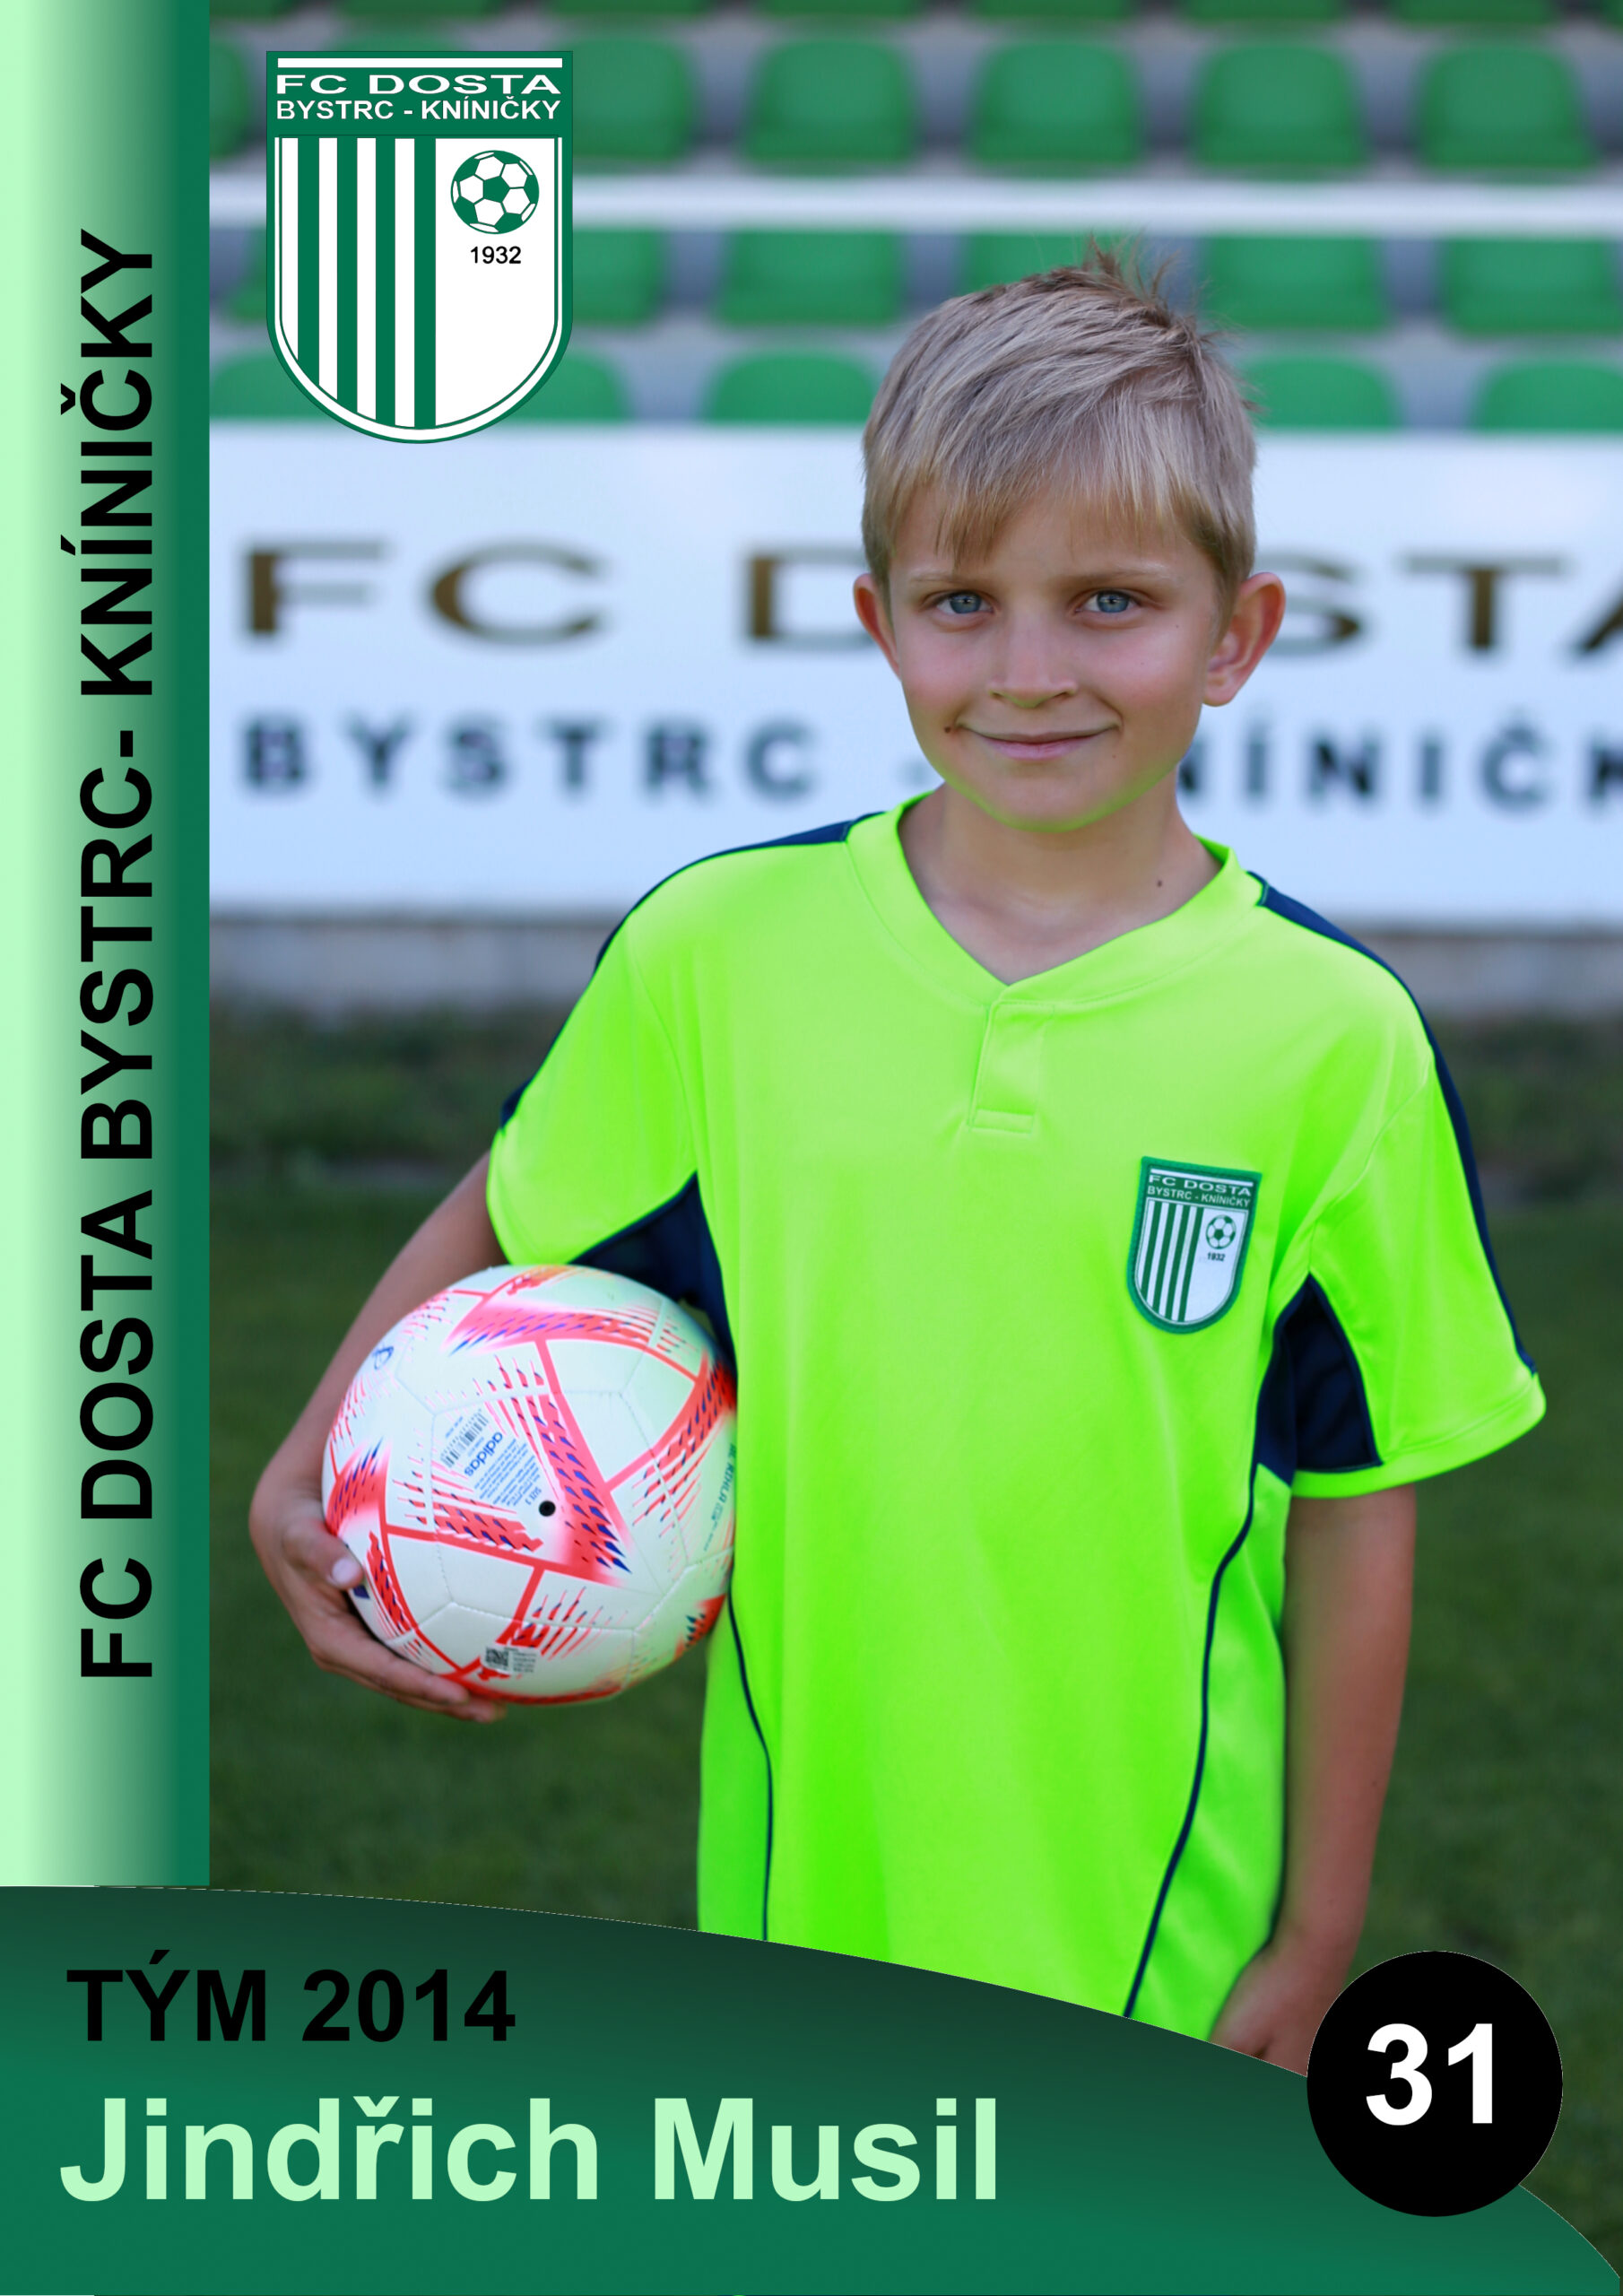 FC Dosta Bystrc - Kníničky Elementor #5153